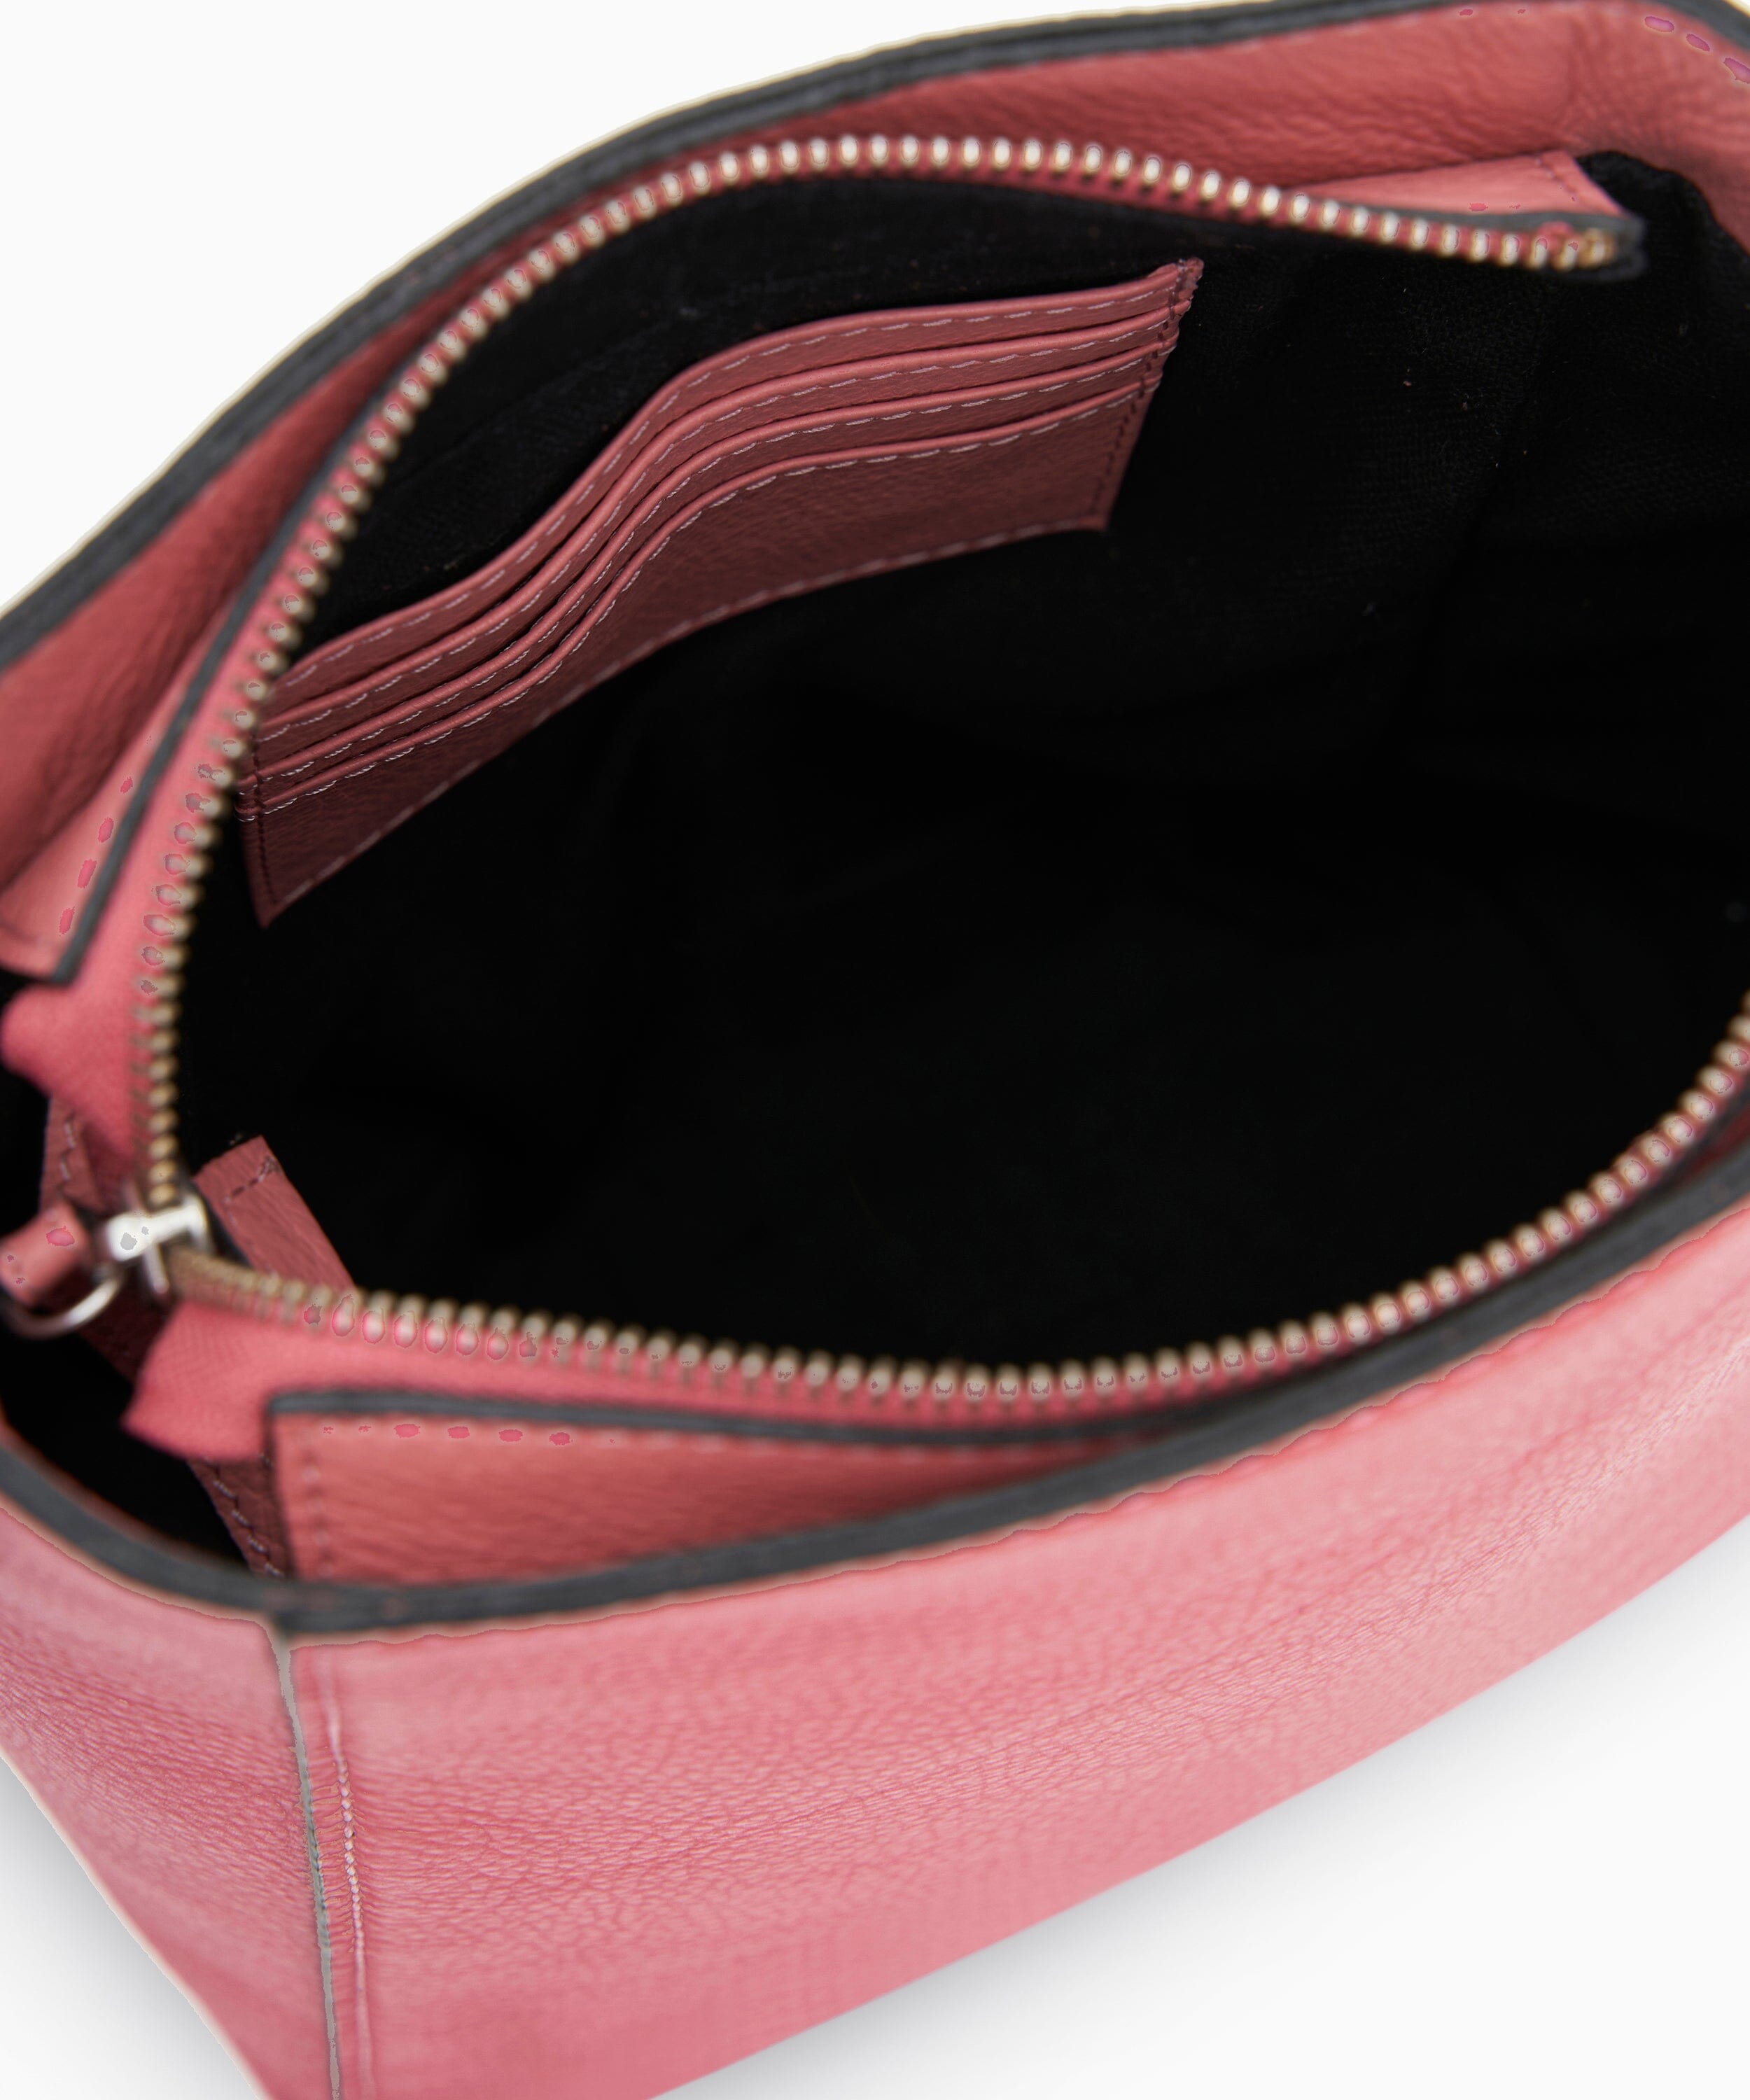 Ilene Shoulder Bag in Pebbled Pink